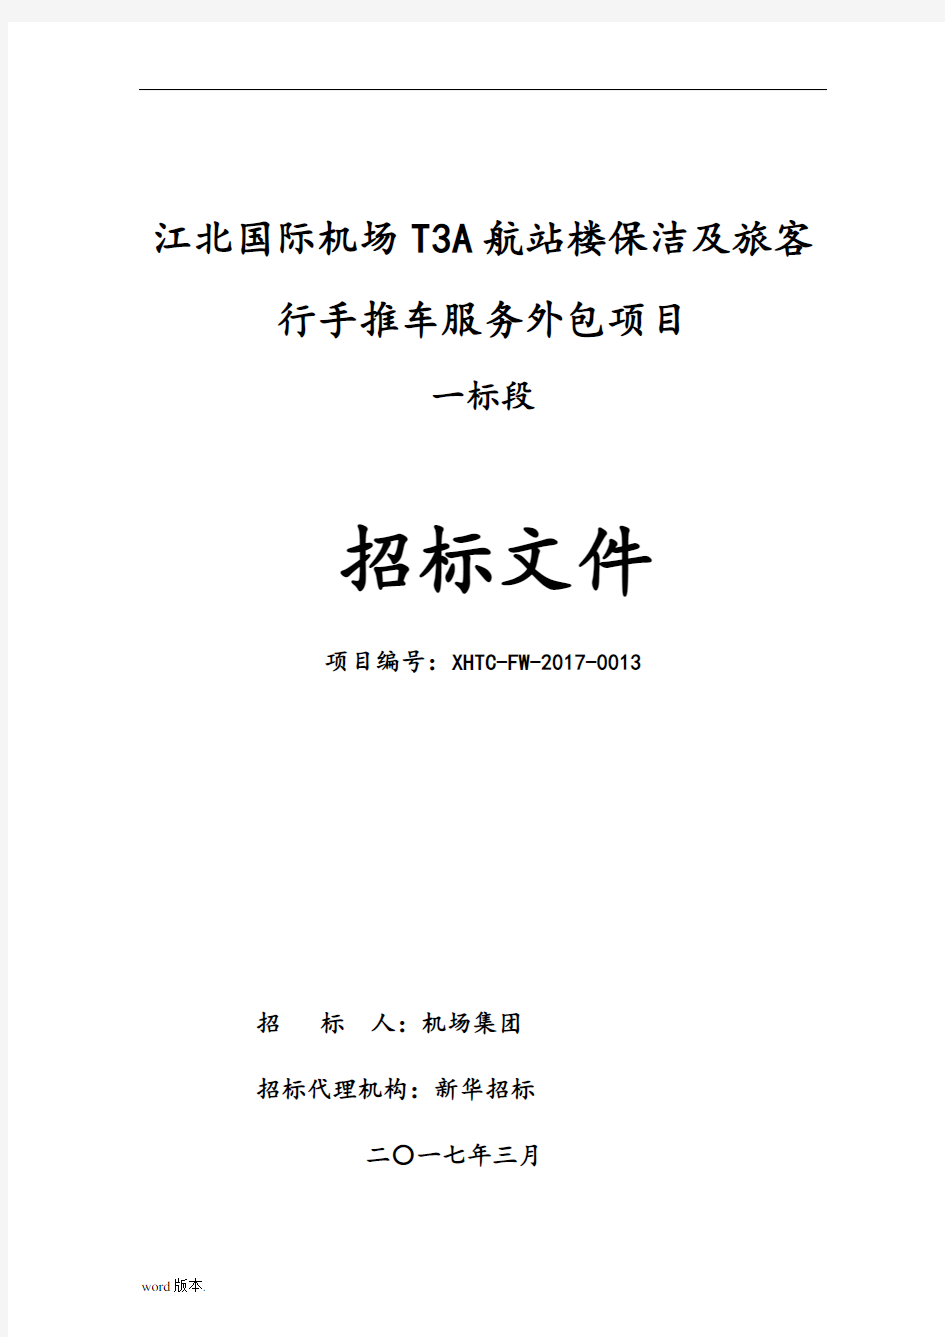 招标文件(重庆江北国际机场T3A航站楼保洁及旅客行李手推车服务外包项目一标段)